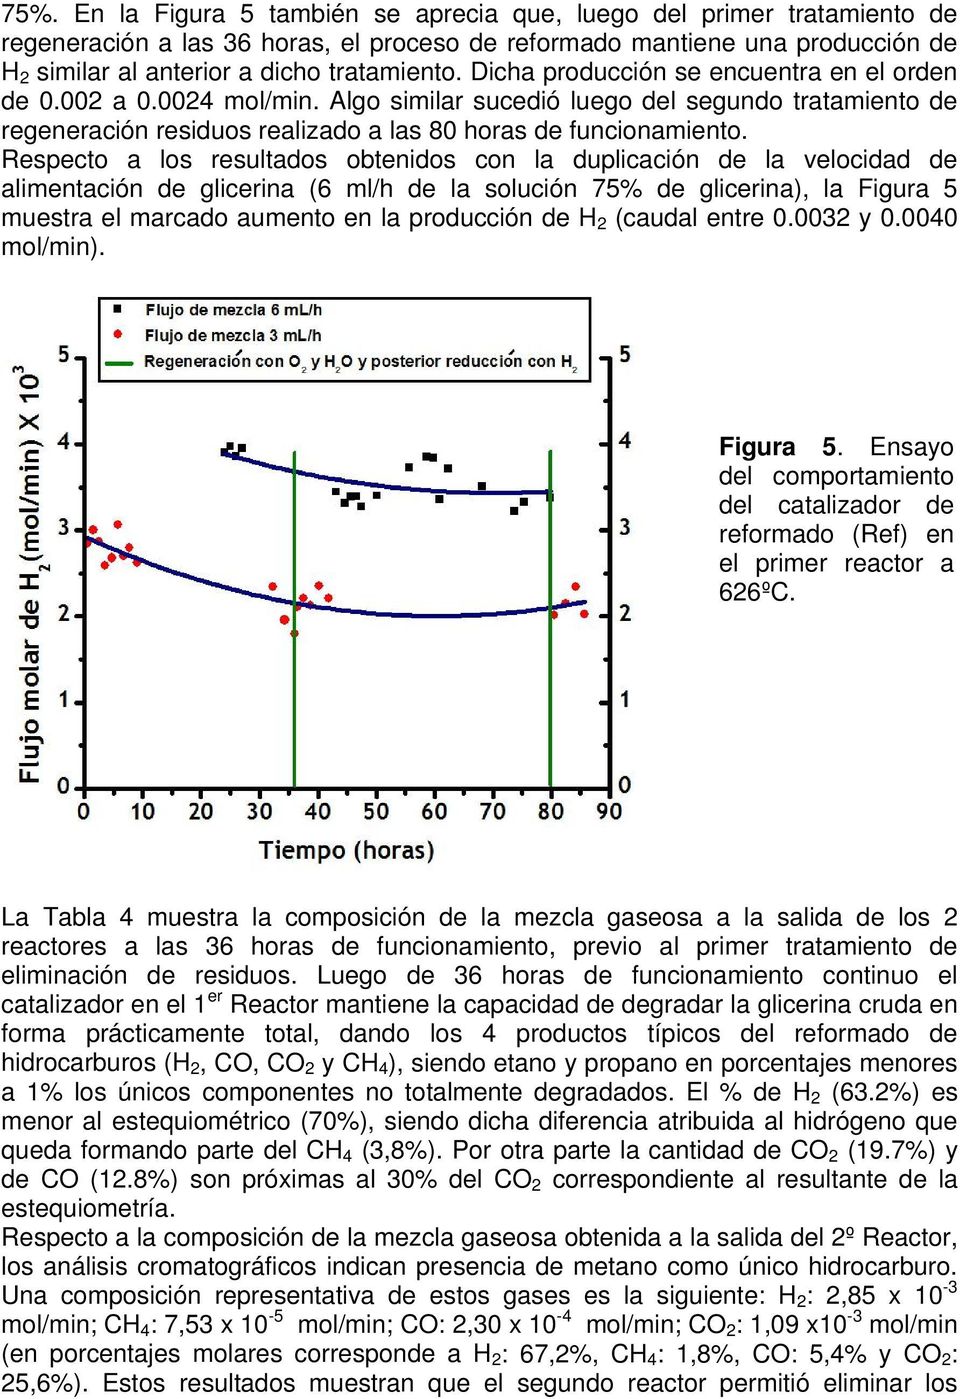 Respecto a los resultados obtenidos con la duplicación de la velocidad de alimentación de glicerina (6 ml/h de la solución 75% de glicerina), la Figura 5 muestra el marcado aumento en la producción